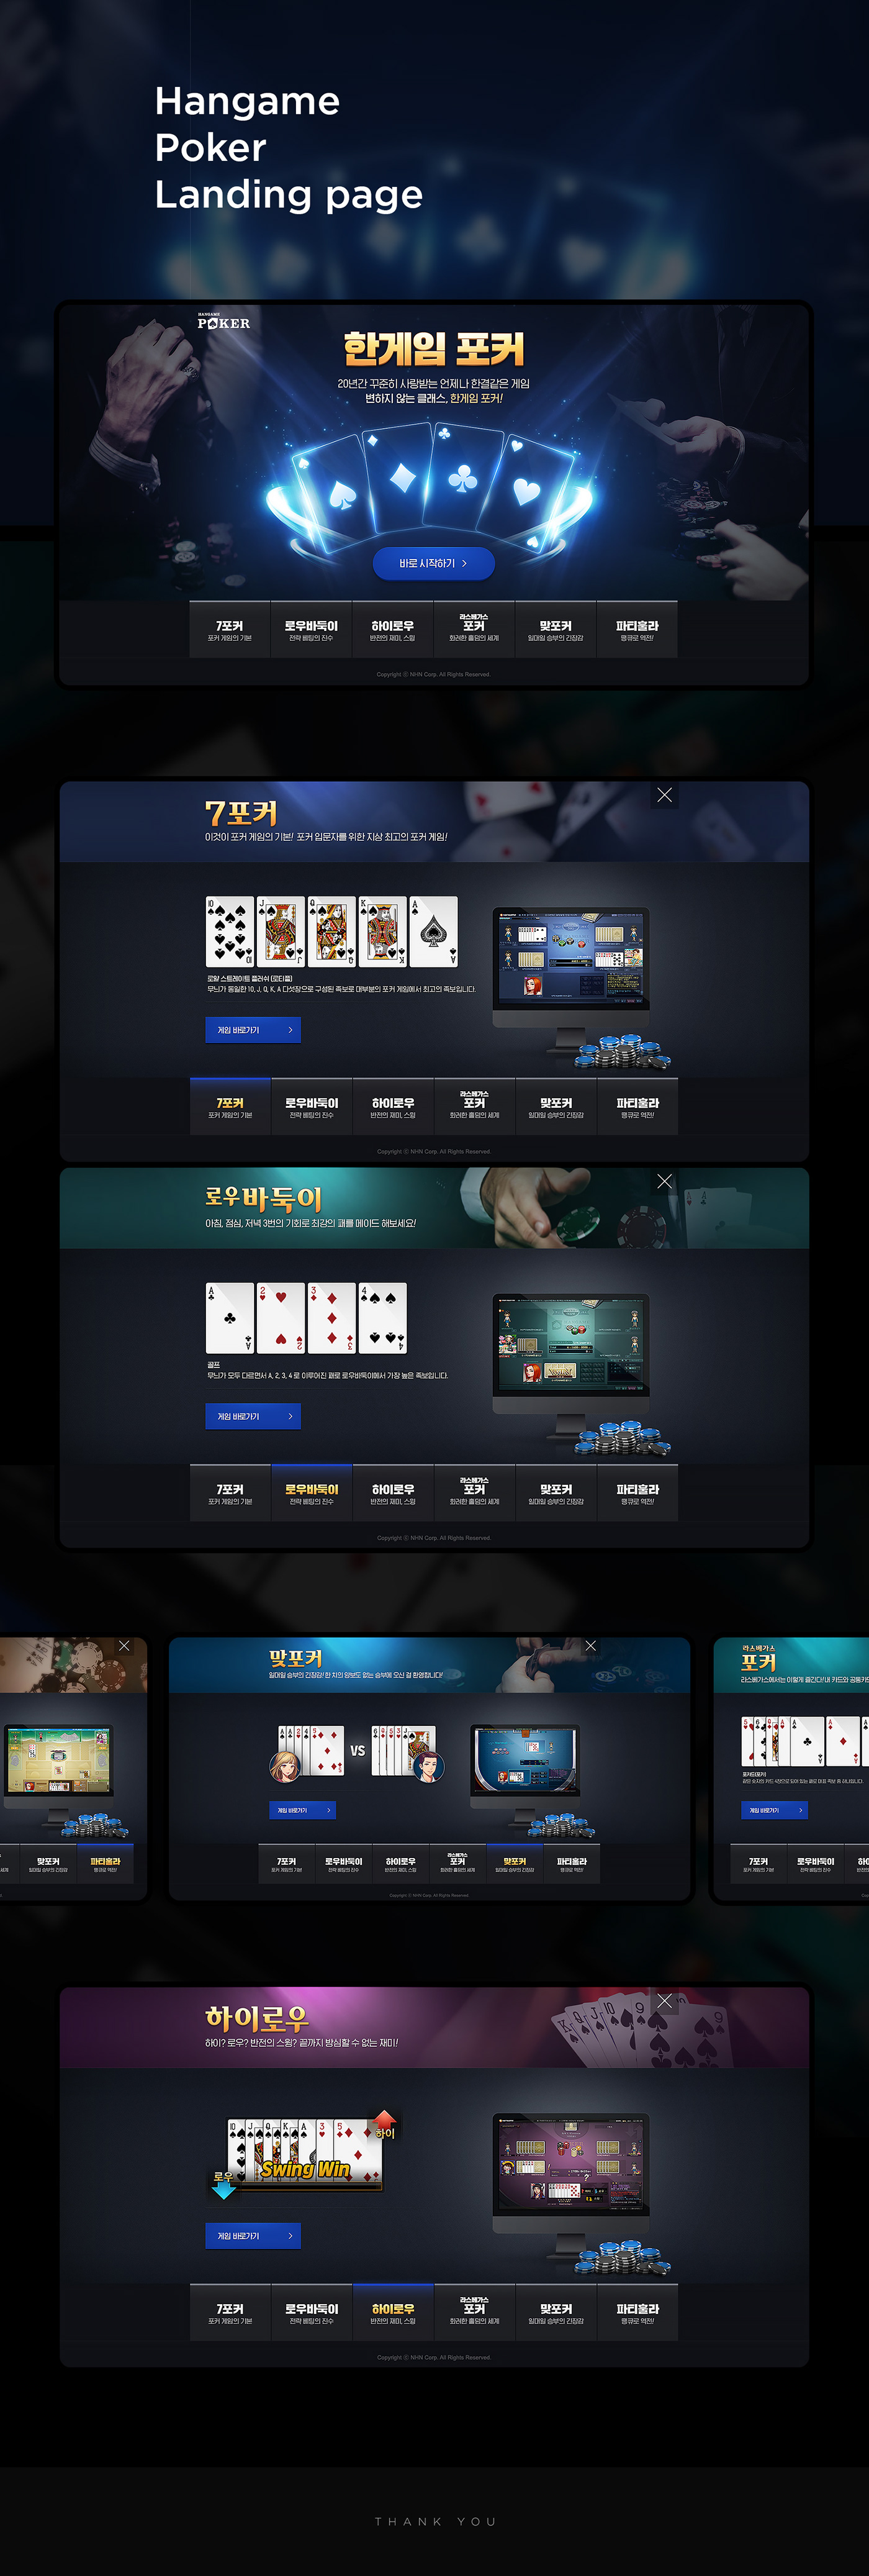 Event Design game Poker Promotion Design Web Design  game design  landing page hangame